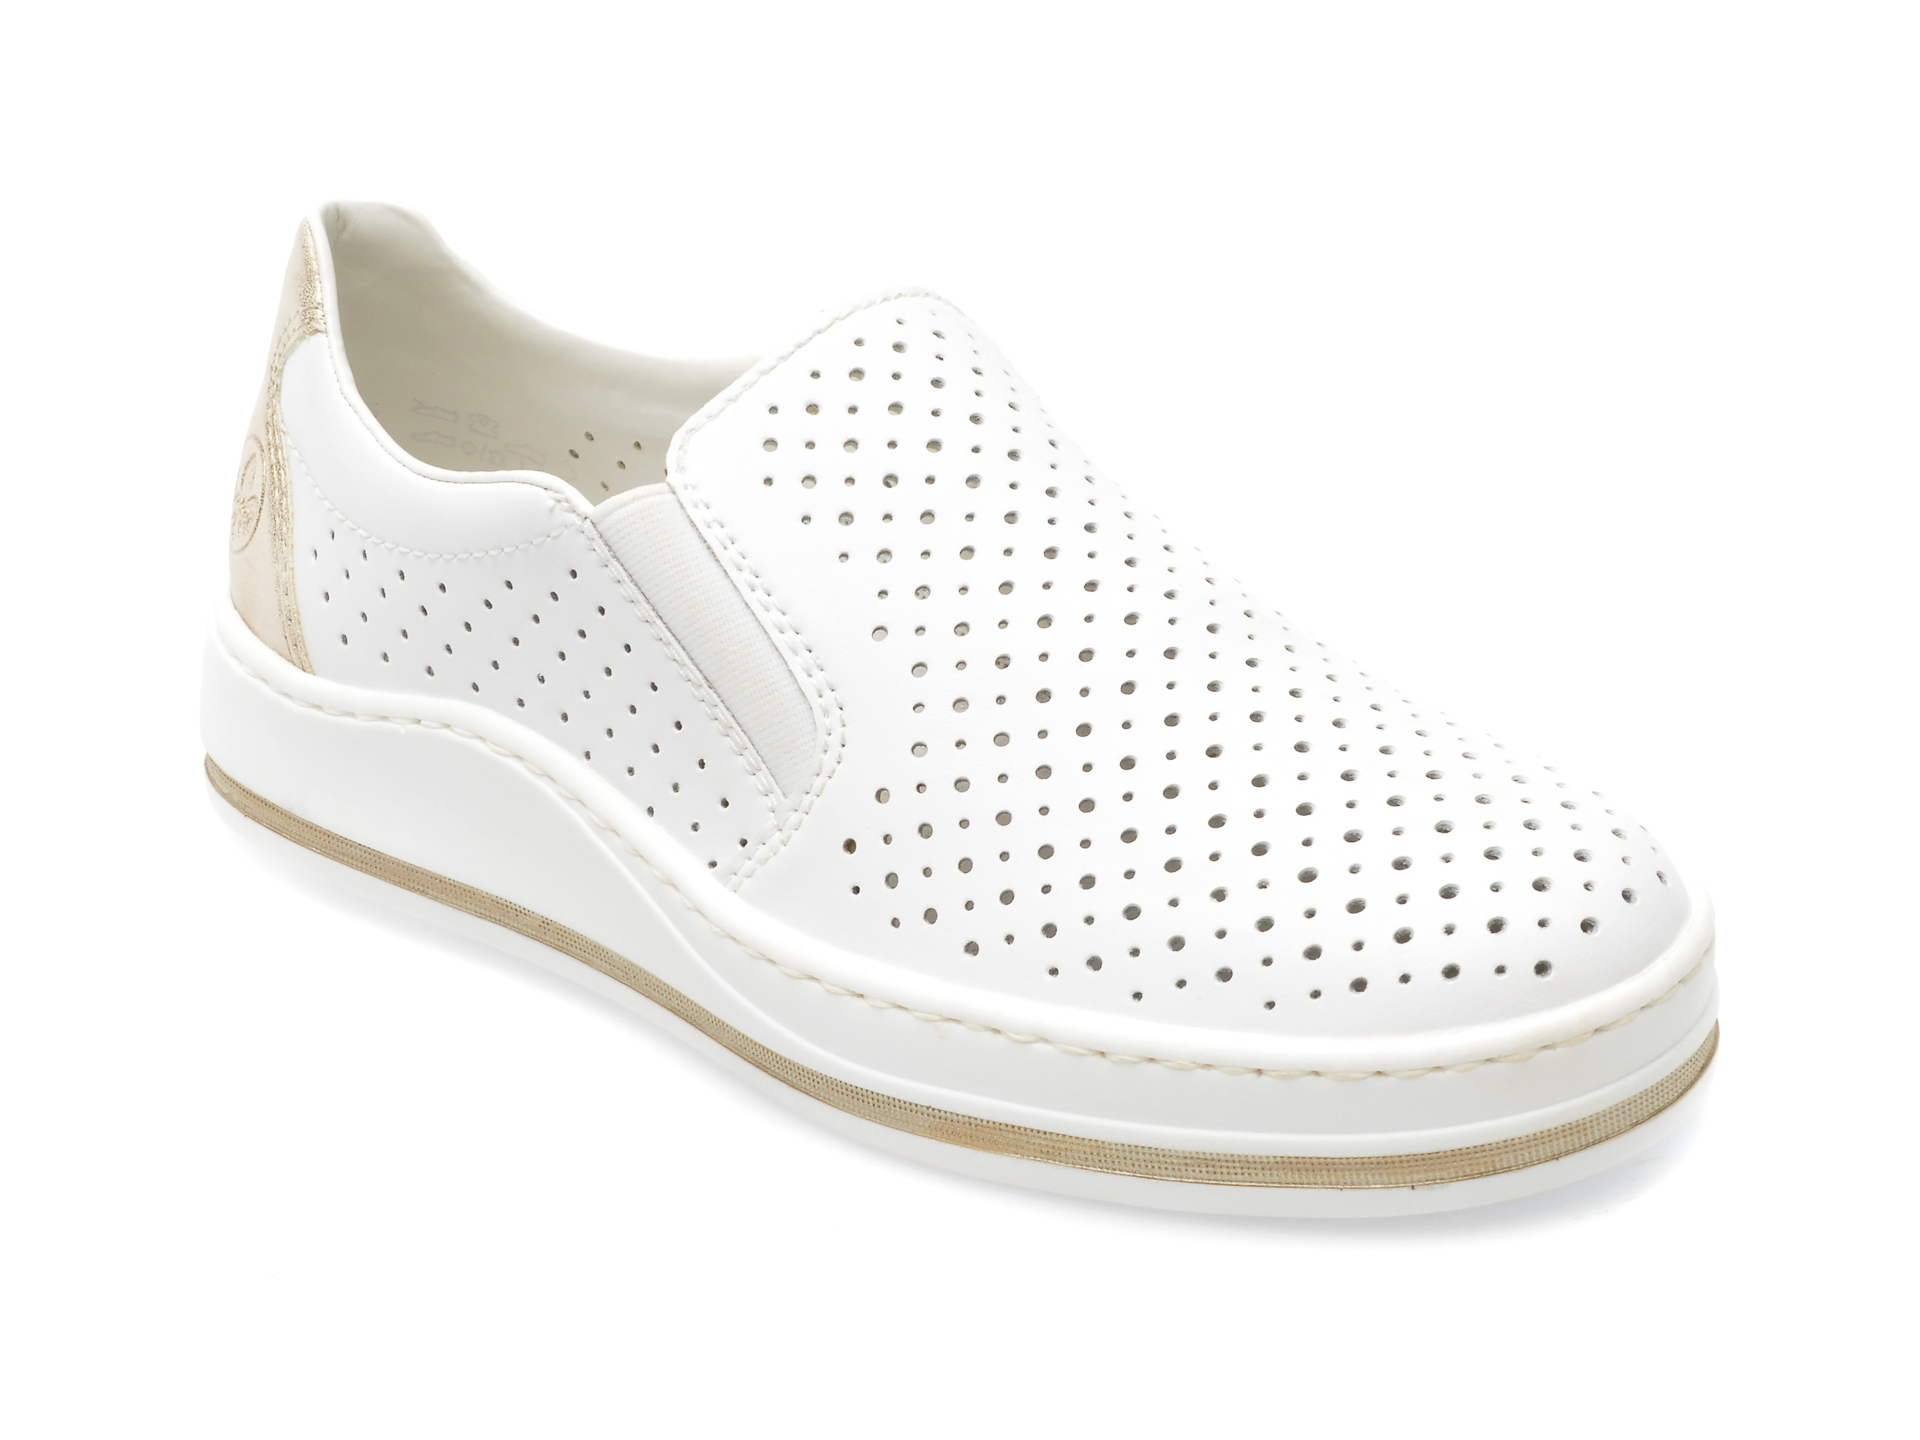 Pantofi RIEKER albi, M5950, din piele ecologica